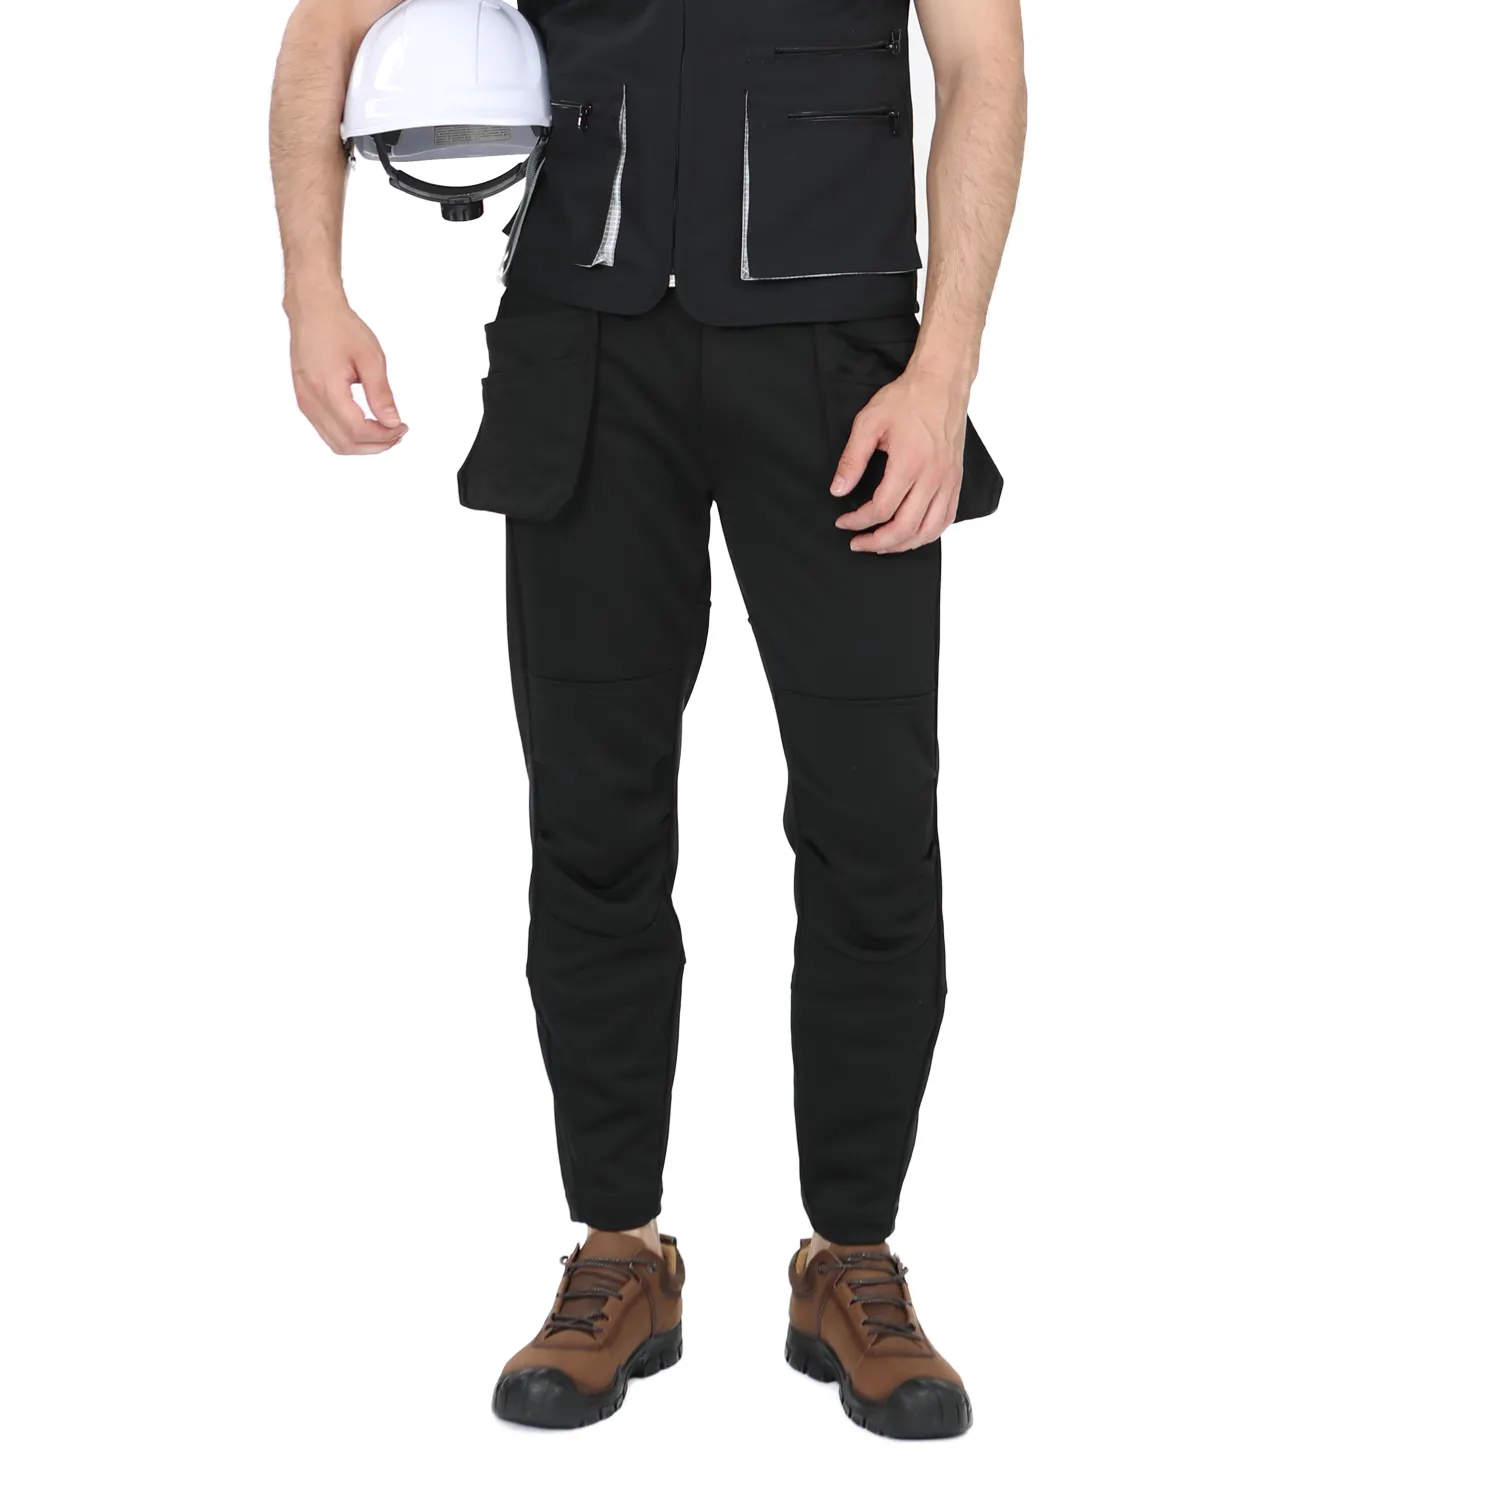 Erkek inşaat pantolon yardımcı aracı cepler kordura diz takviyeli iş elbisesi pantolon güvenlik pantolon